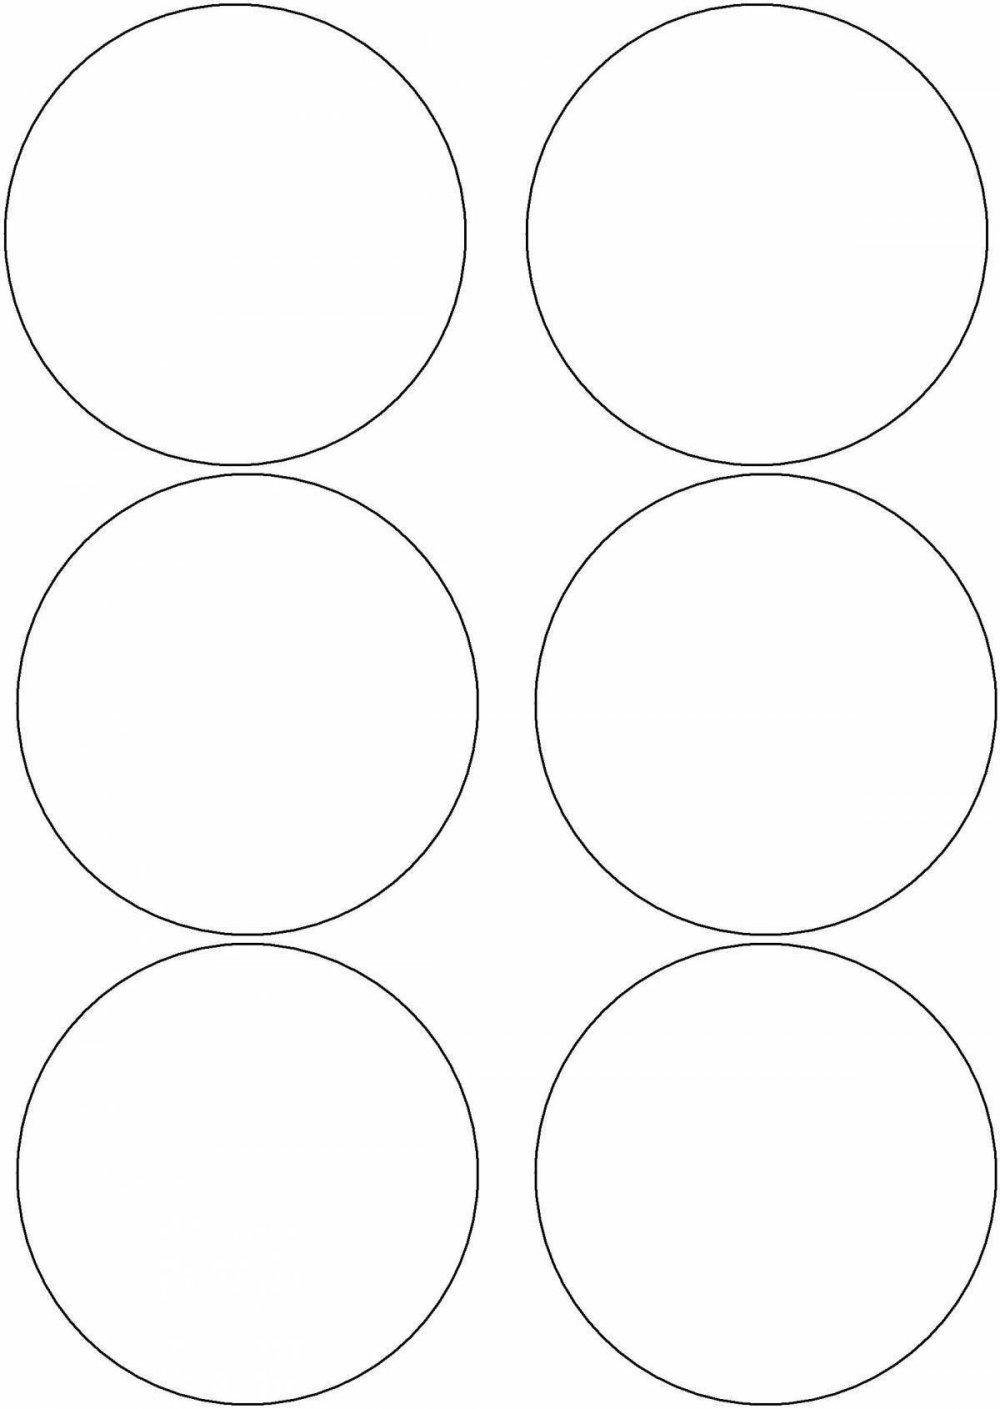 Много кругов на одном листе